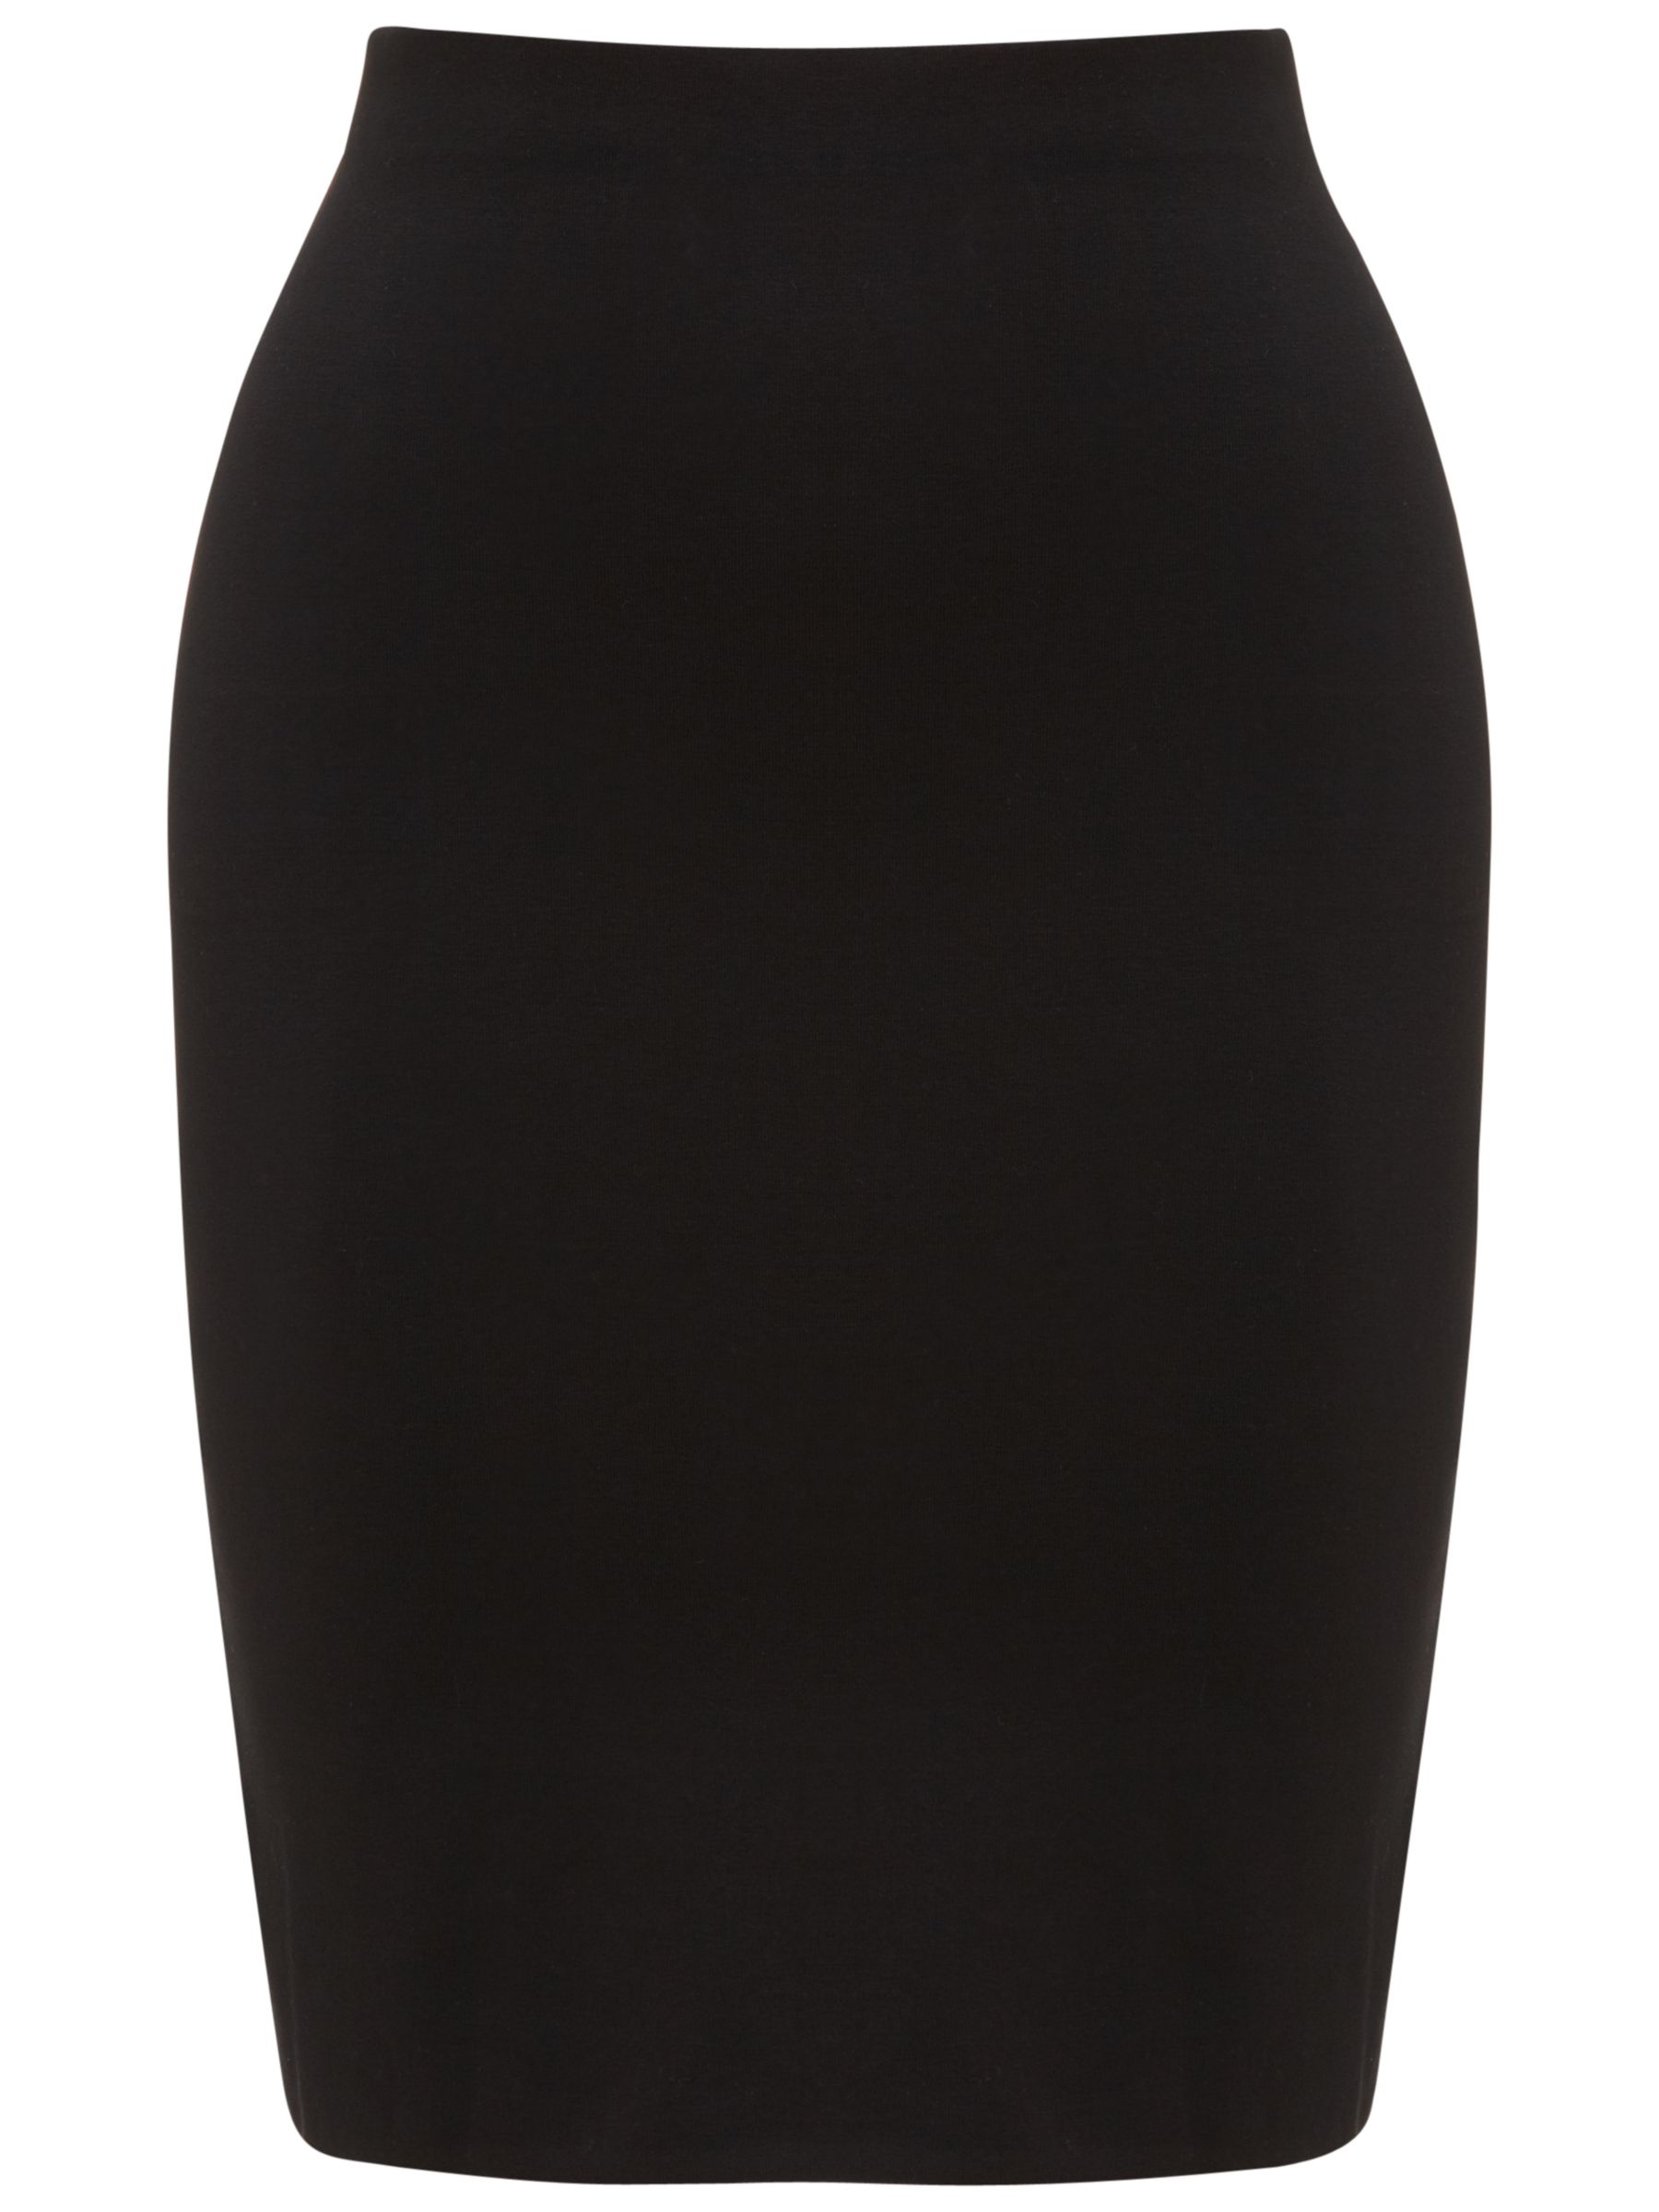 Buy Whistles Jersey Tube Skirt, Black Online at johnlewis.com